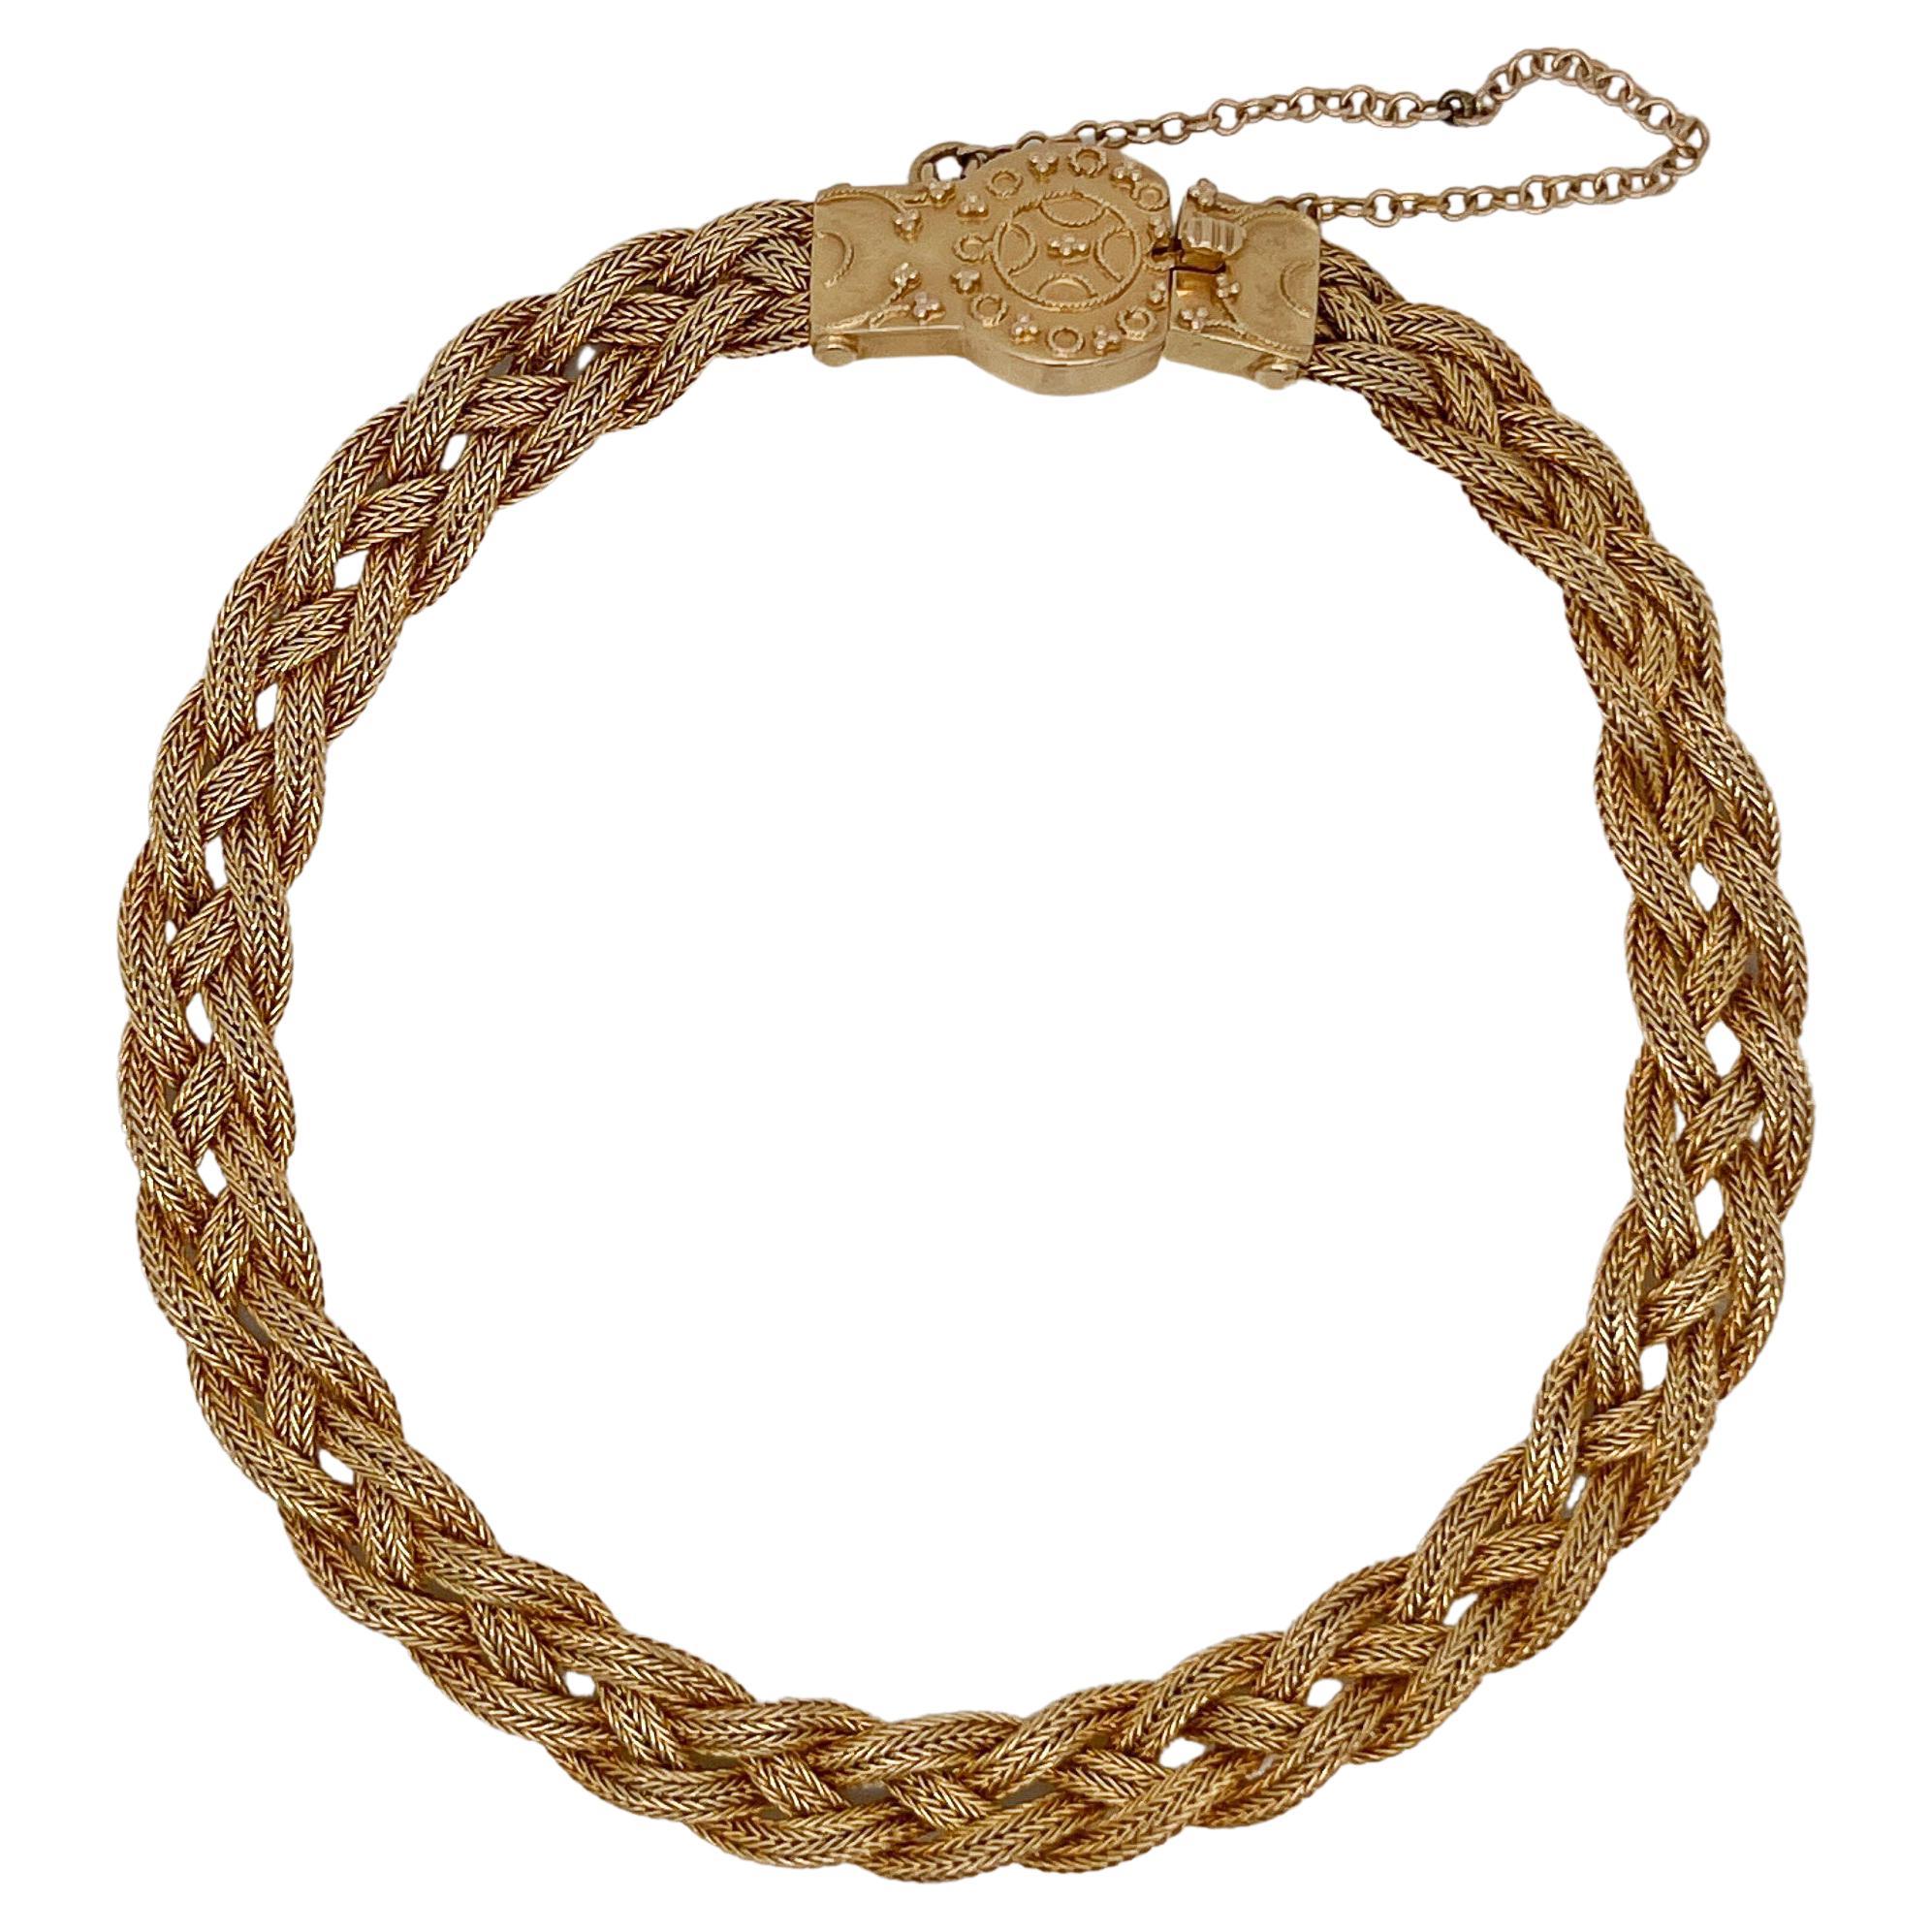 Antique Woven 14 Karat Gold Etruscan Style Bracelet